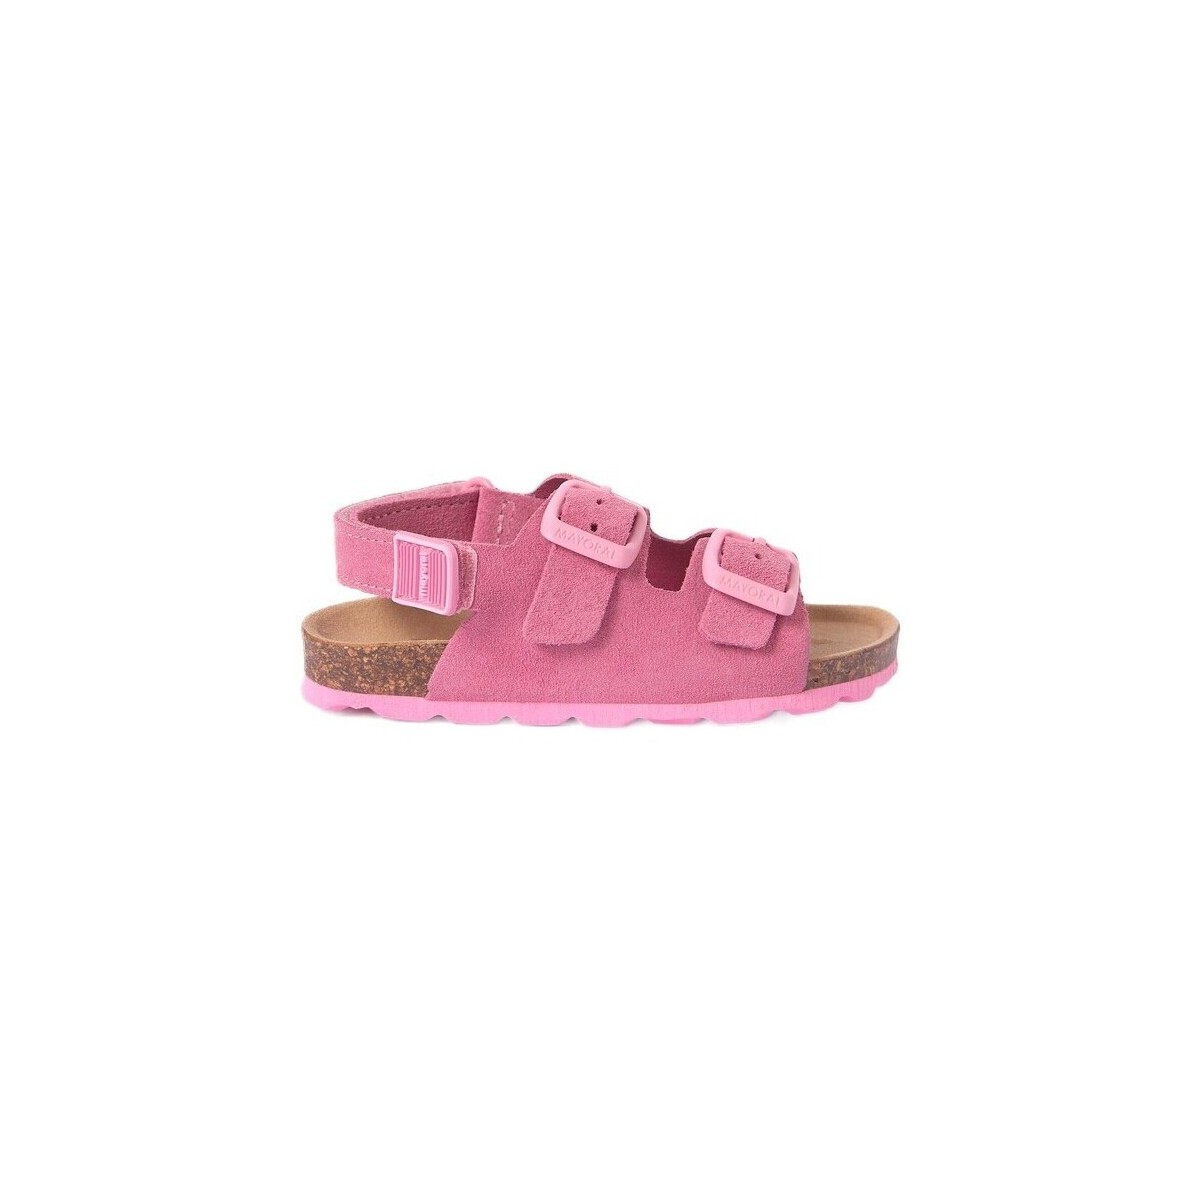 Παπούτσια Σανδάλια / Πέδιλα Mayoral 28250-18 Ροζ